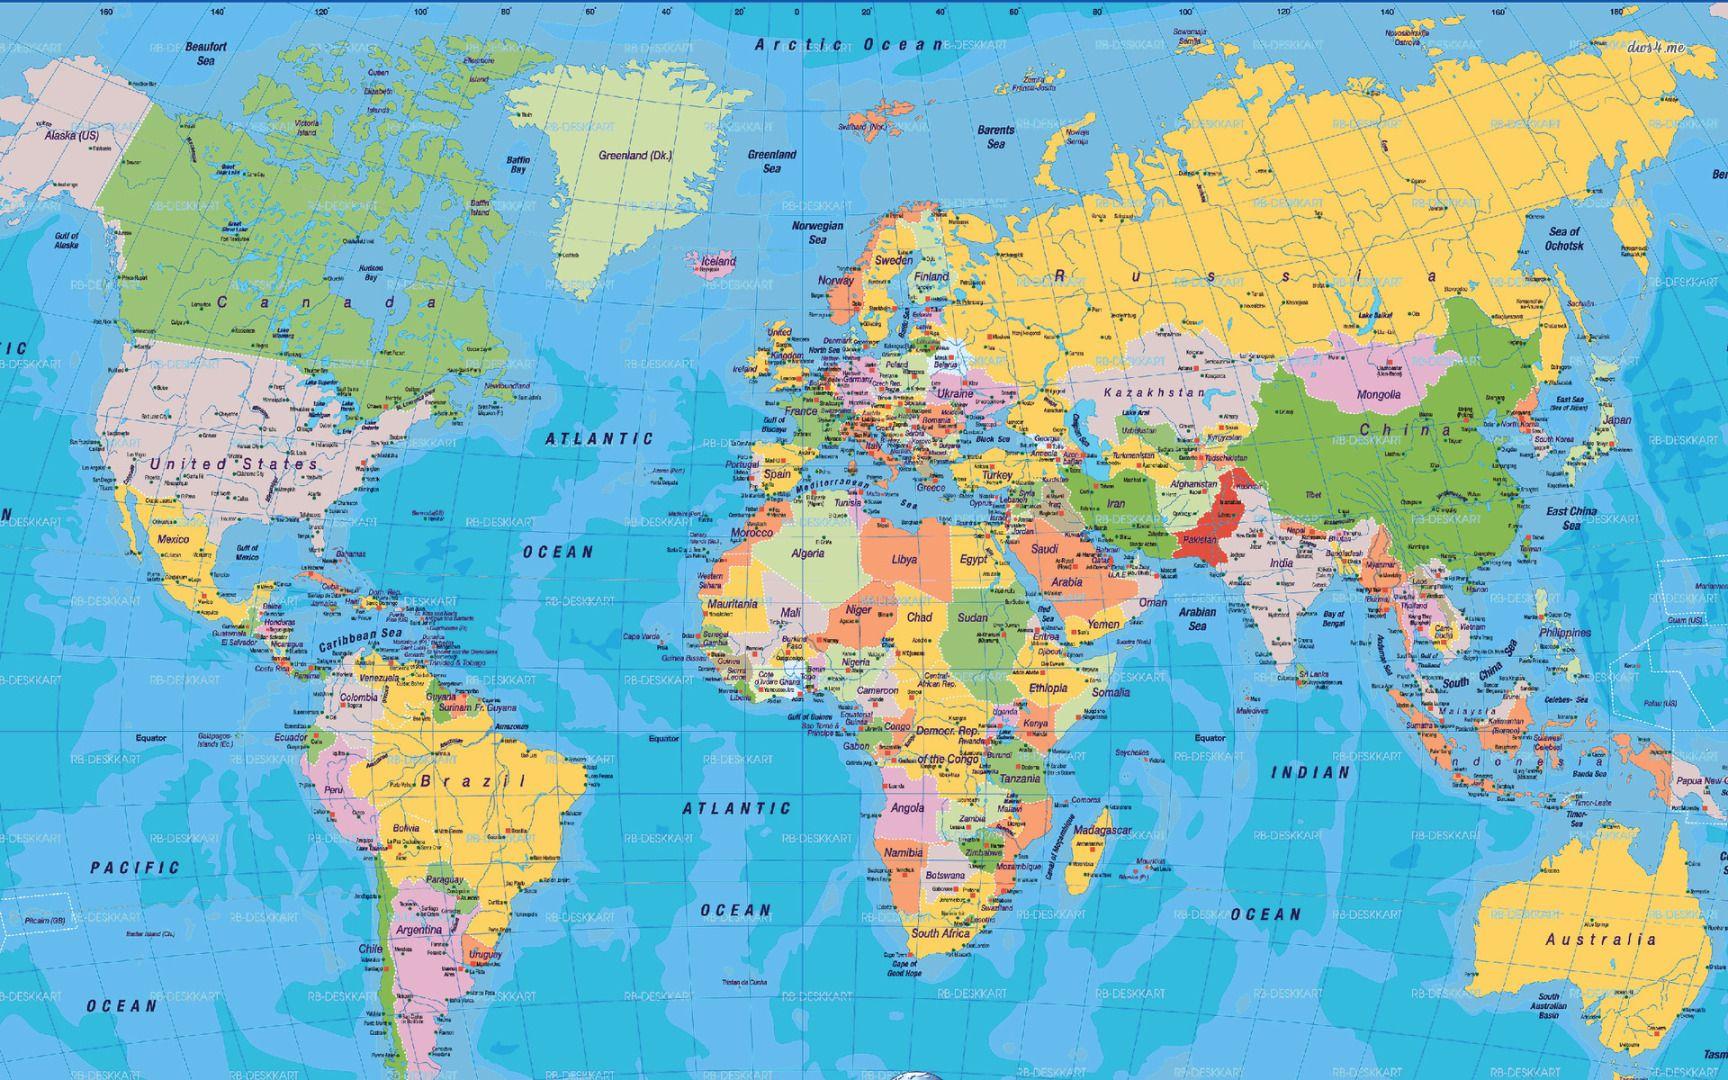 World Map 11 10.11.2014 Top Wallpaper Best Wallpaper HD Free Wallpaper Background Image FHD 4k. World Map Printable, World Map Wallpaper, World Political Map